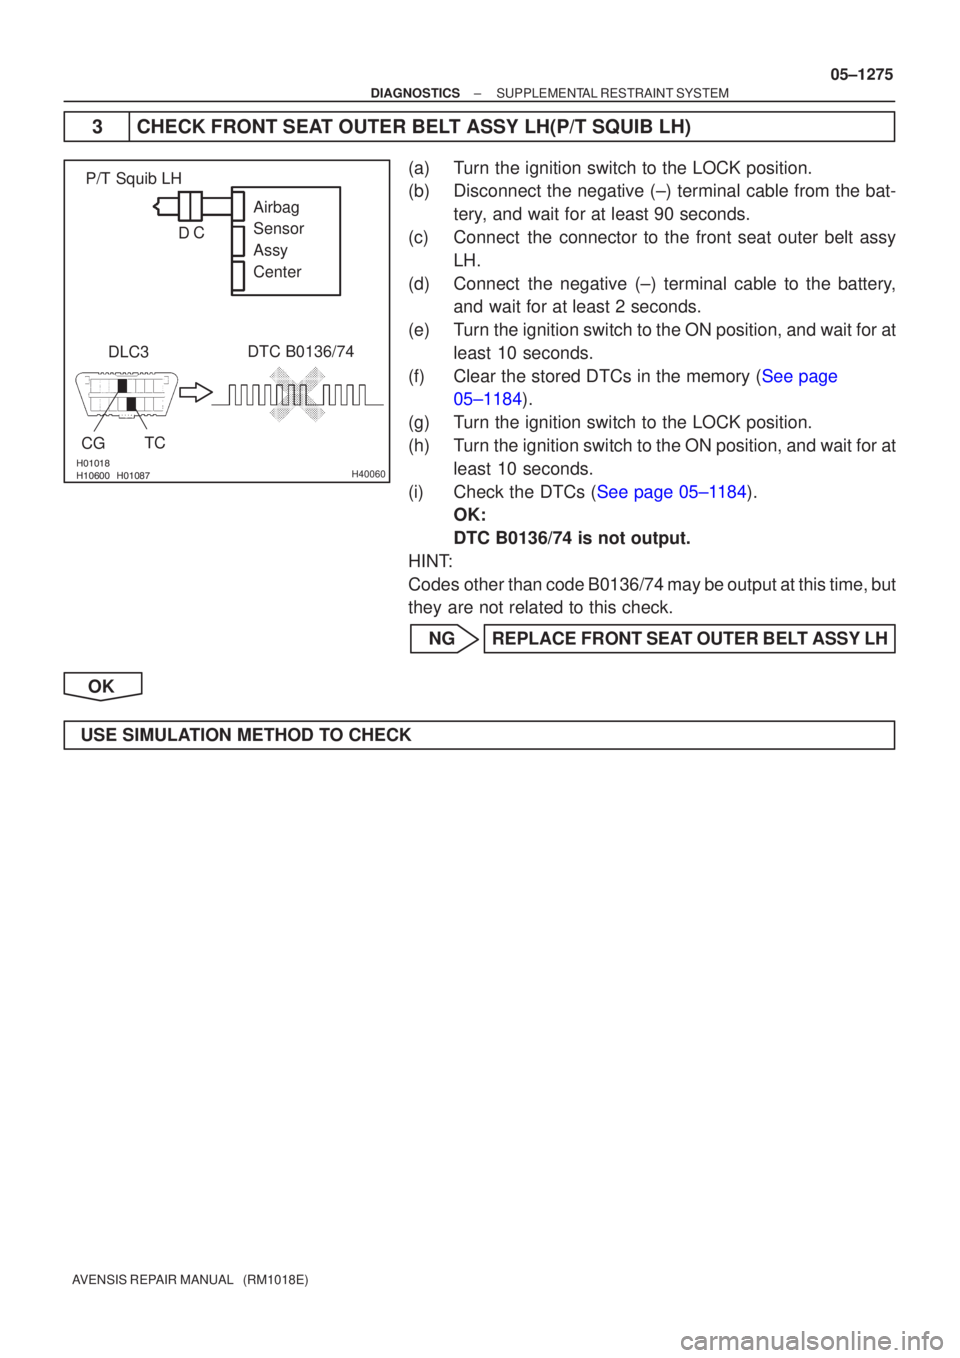 TOYOTA AVENSIS 2005  Service Repair Manual  H40060
P/T Squib LHDLC3
CG
DTC B0136/74
TC Airbag
Sensor
Assy
Center
C
D
±
DIAGNOSTICS SUPPLEMENTAL RESTRAINT SYSTEM
05±1275
AVENSIS REPAIR MANUAL   (RM1018E)
3 CHECK FRONT SEAT O